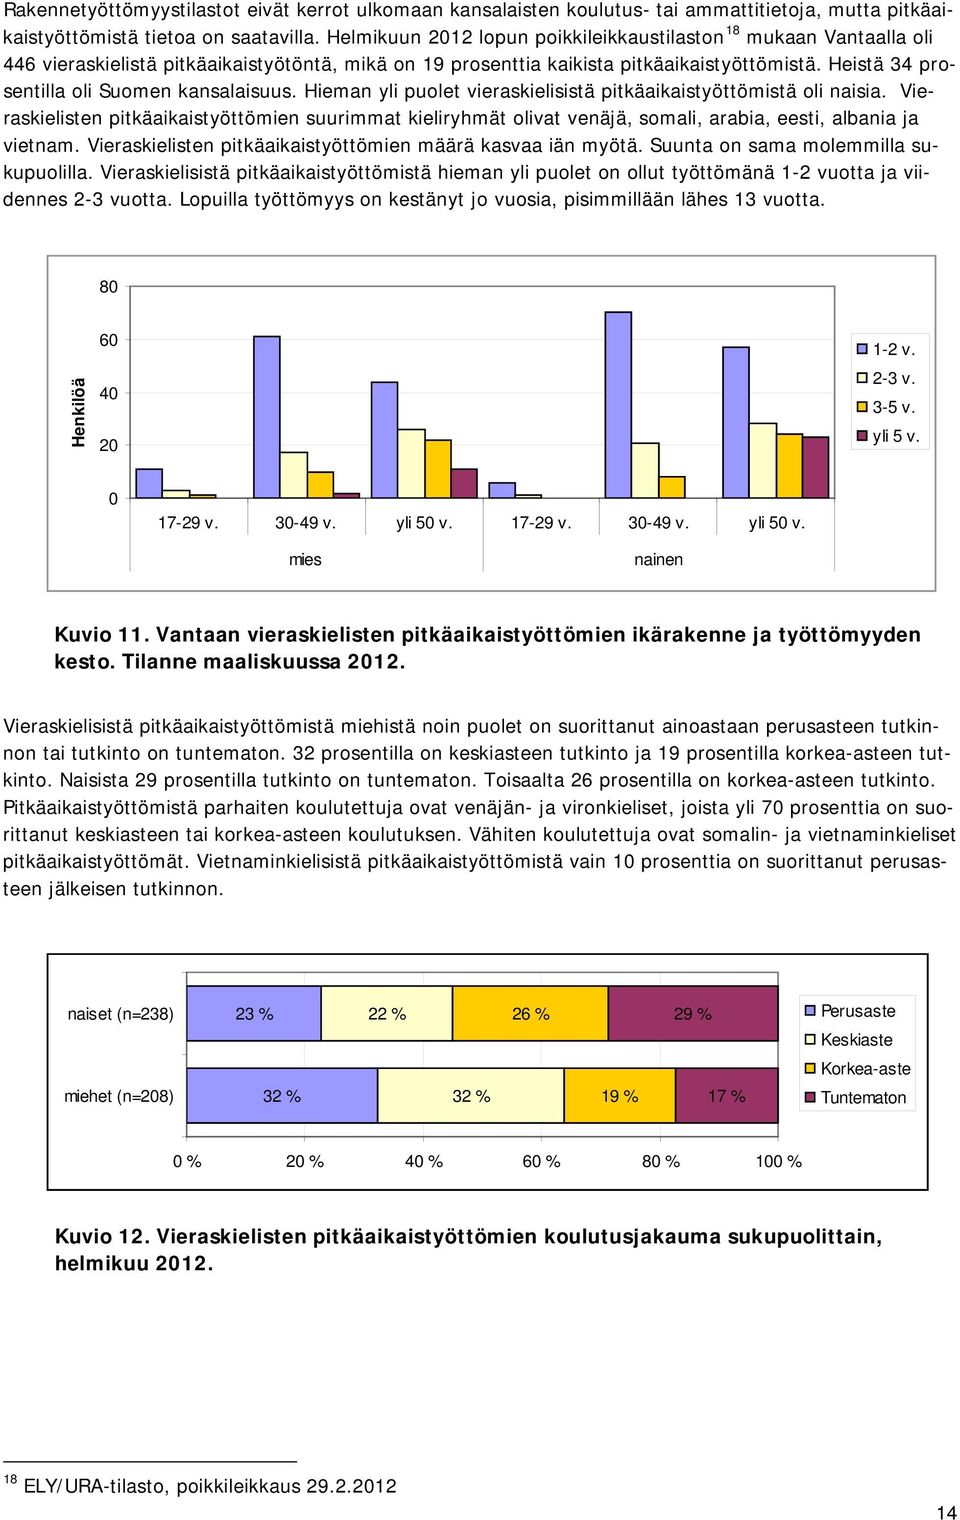 Heistä 34 prosentilla oli Suomen kansalaisuus. Hieman yli puolet vieraskielisistä pitkäaikaistyöttömistä oli naisia.